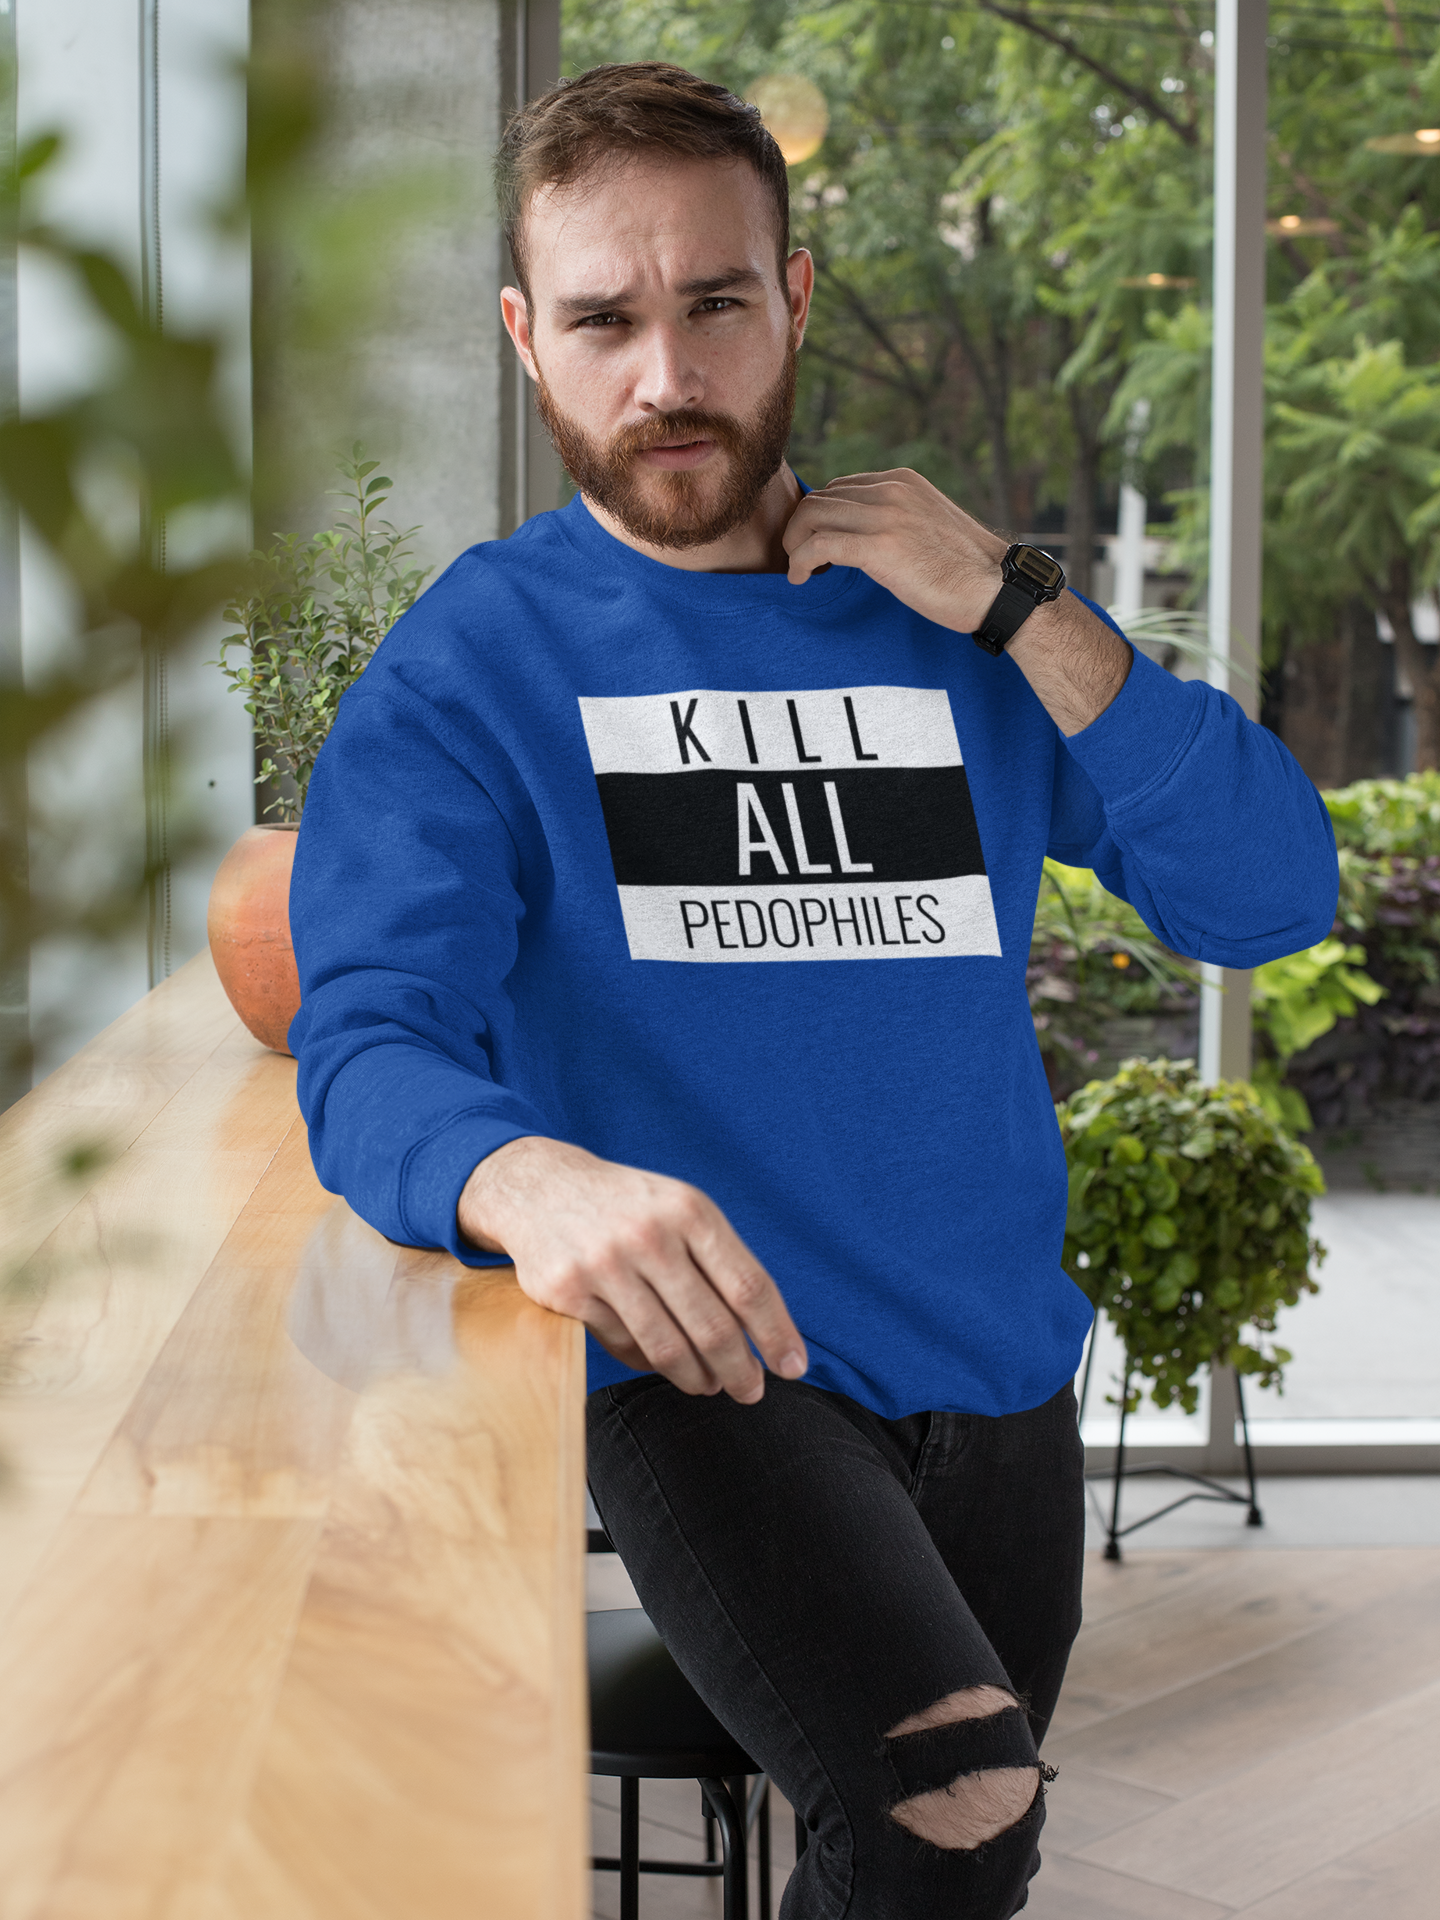 Kill All Pedophiles Sweatshirt i flertalet färger, Dumpen, 2forty2, Sveriges största antipedofil företag, Vi accepterar inte pedofiler i vårt samhälle